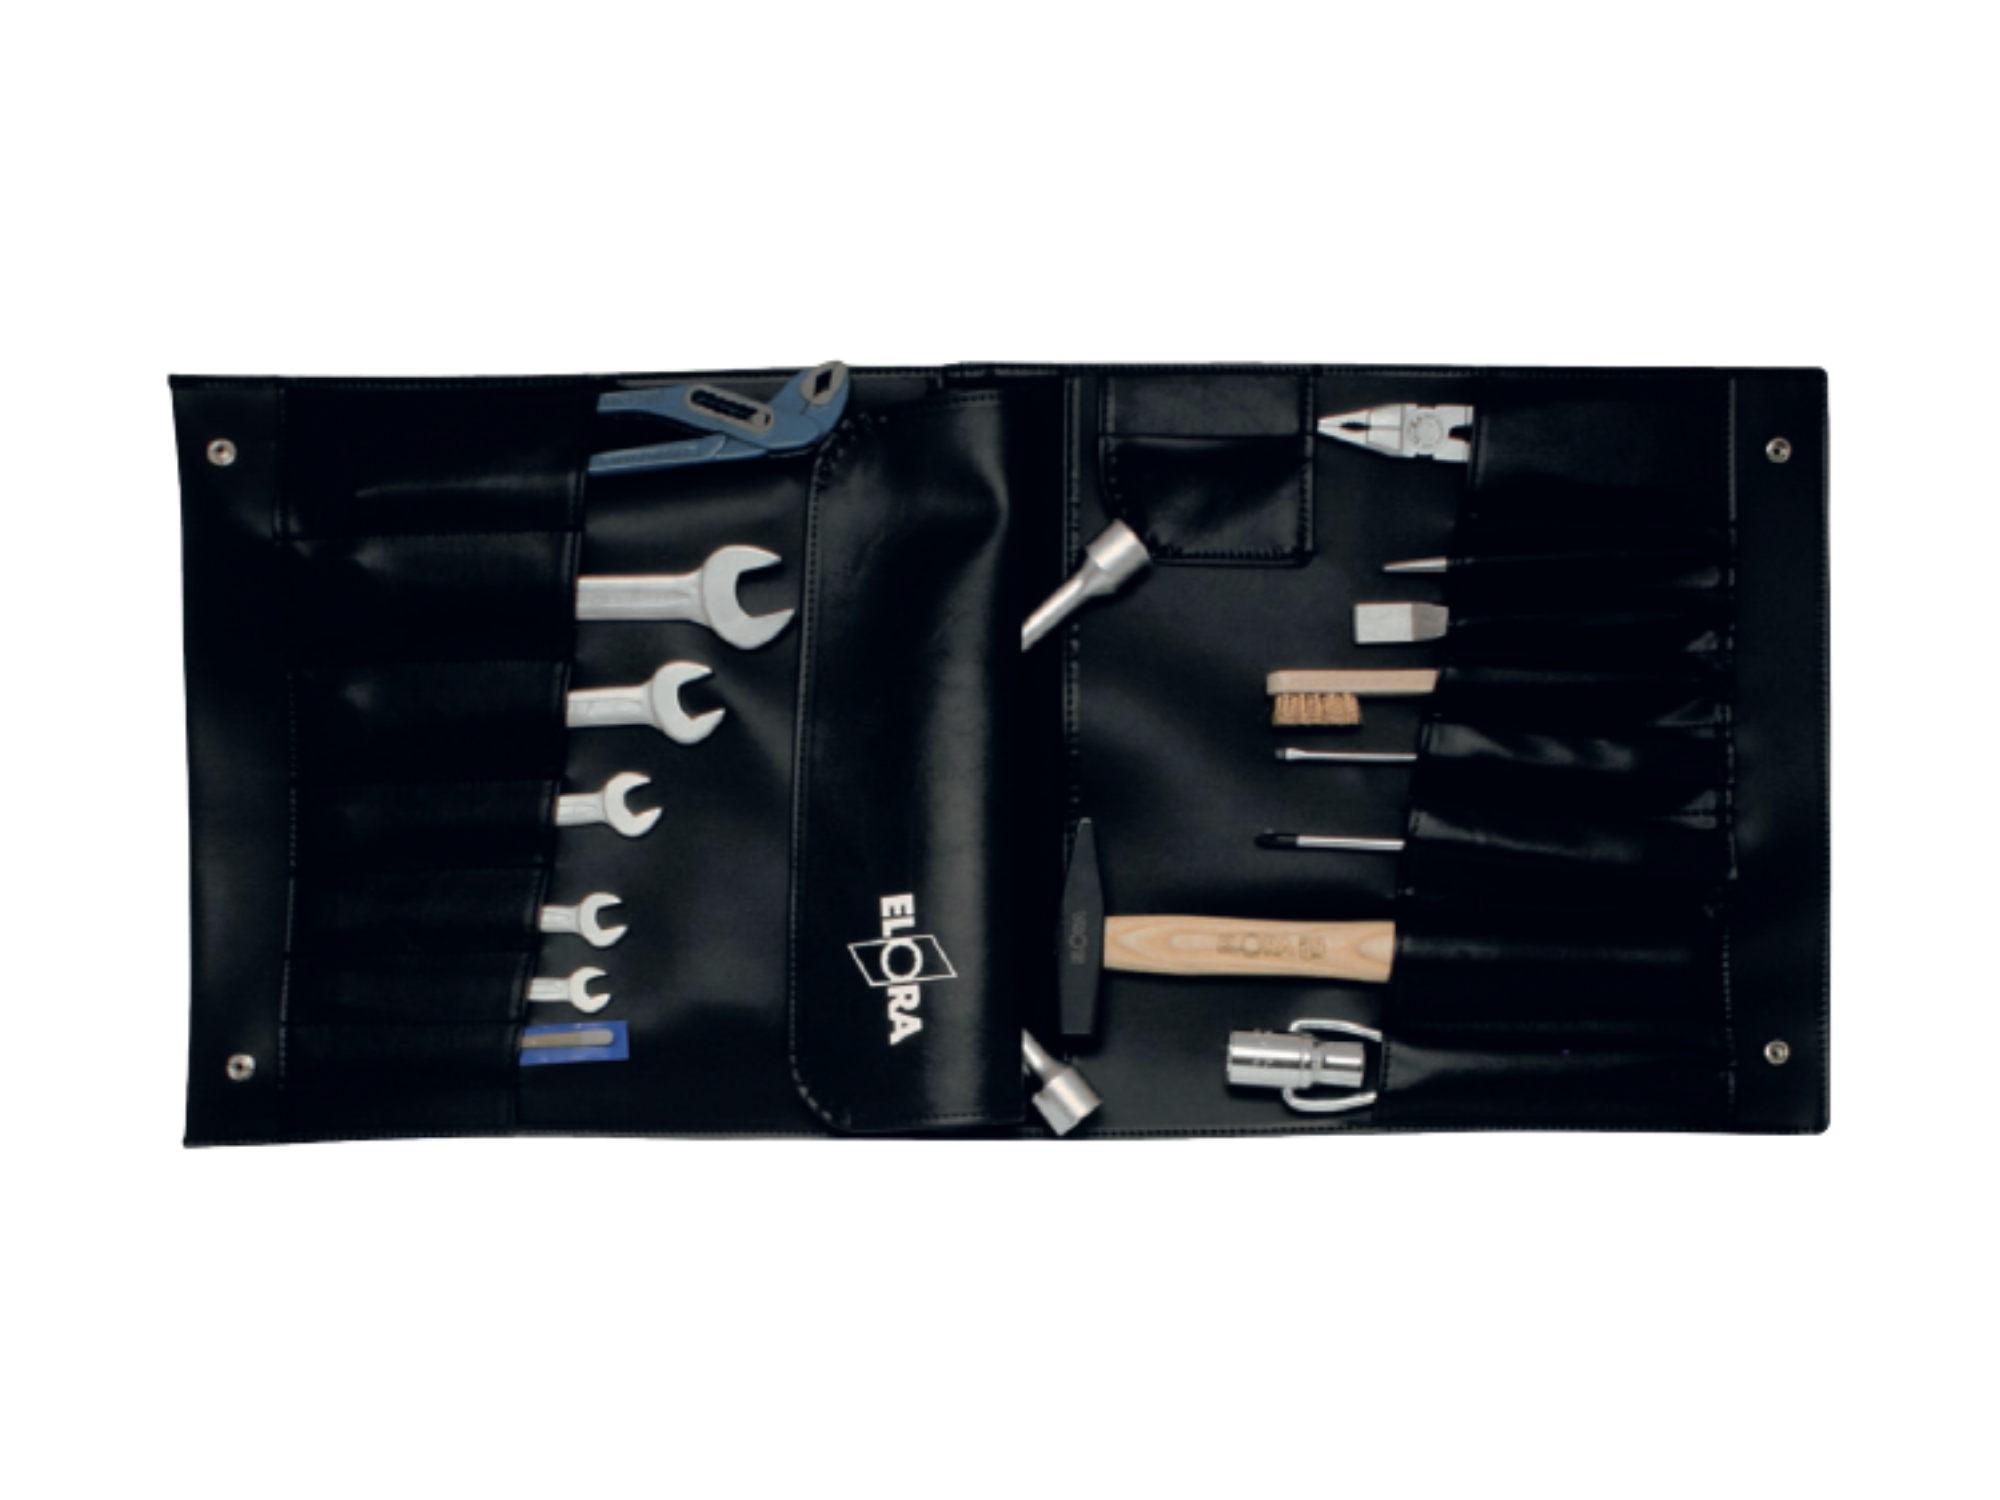 ELORA 1300M Tool Kit In Strong Black Storage Wallet 16 pcs Metric - Premium Tool Kit from ELORA - Shop now at Yew Aik.